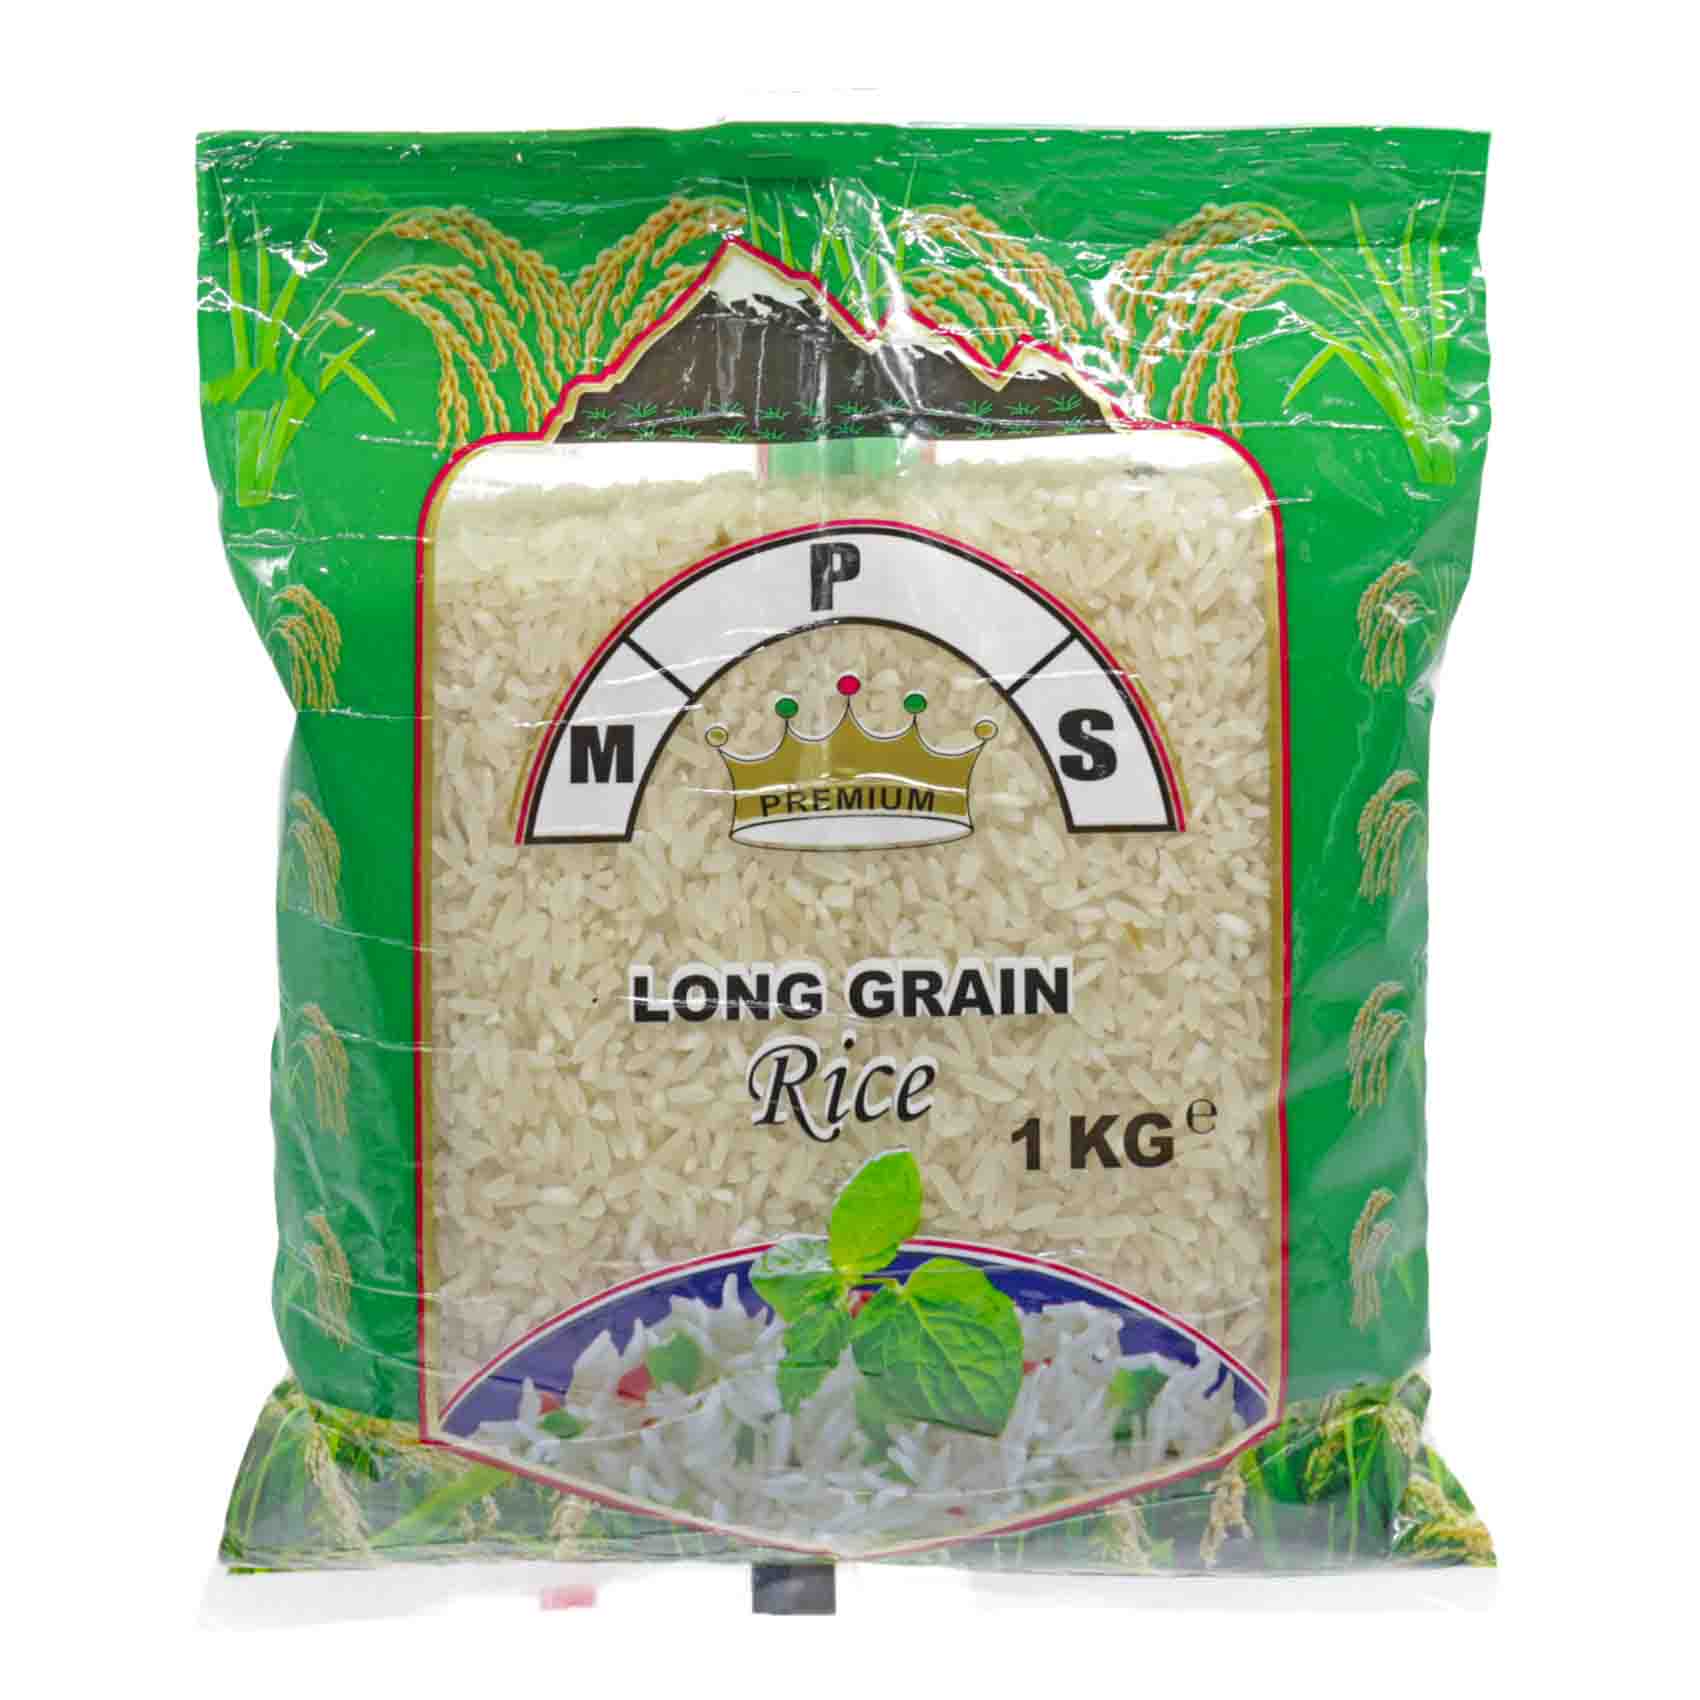 Kings M. P. S Premium Long Grain Rice 1kg